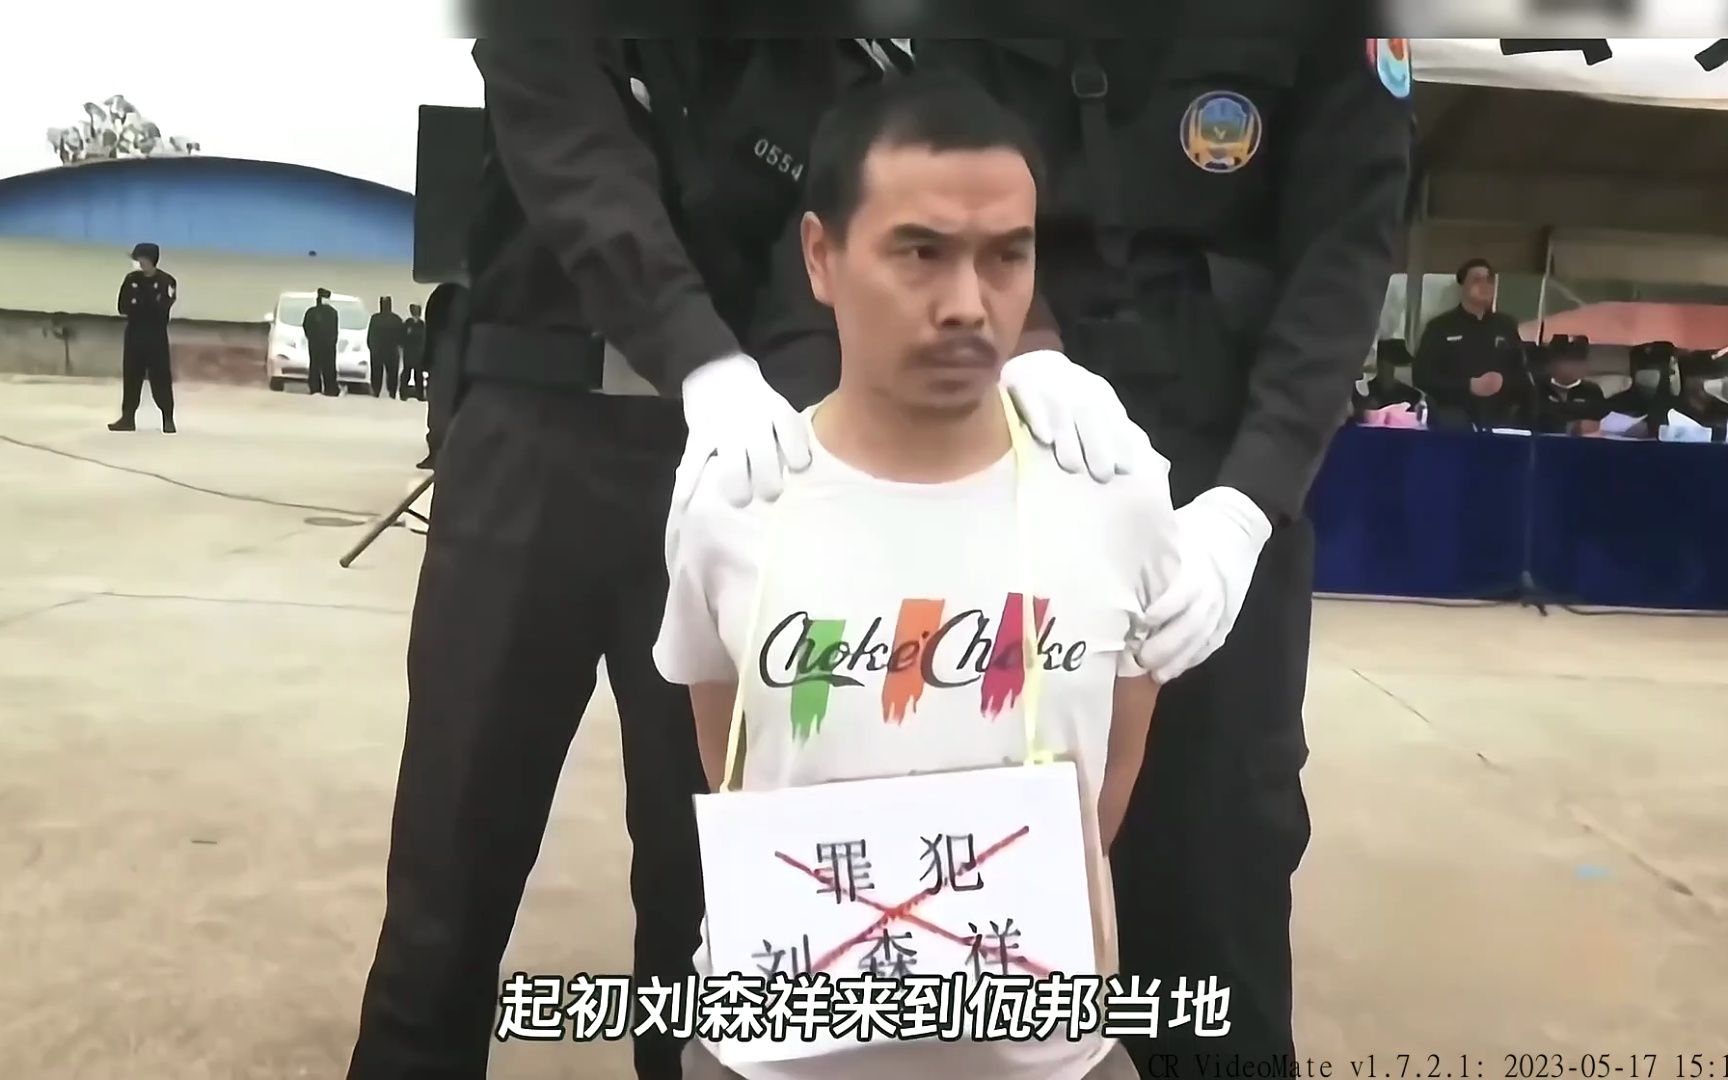 缅甸佤邦公判大会影像,中国贵州籍3名罪犯,被押送刑场执行死刑